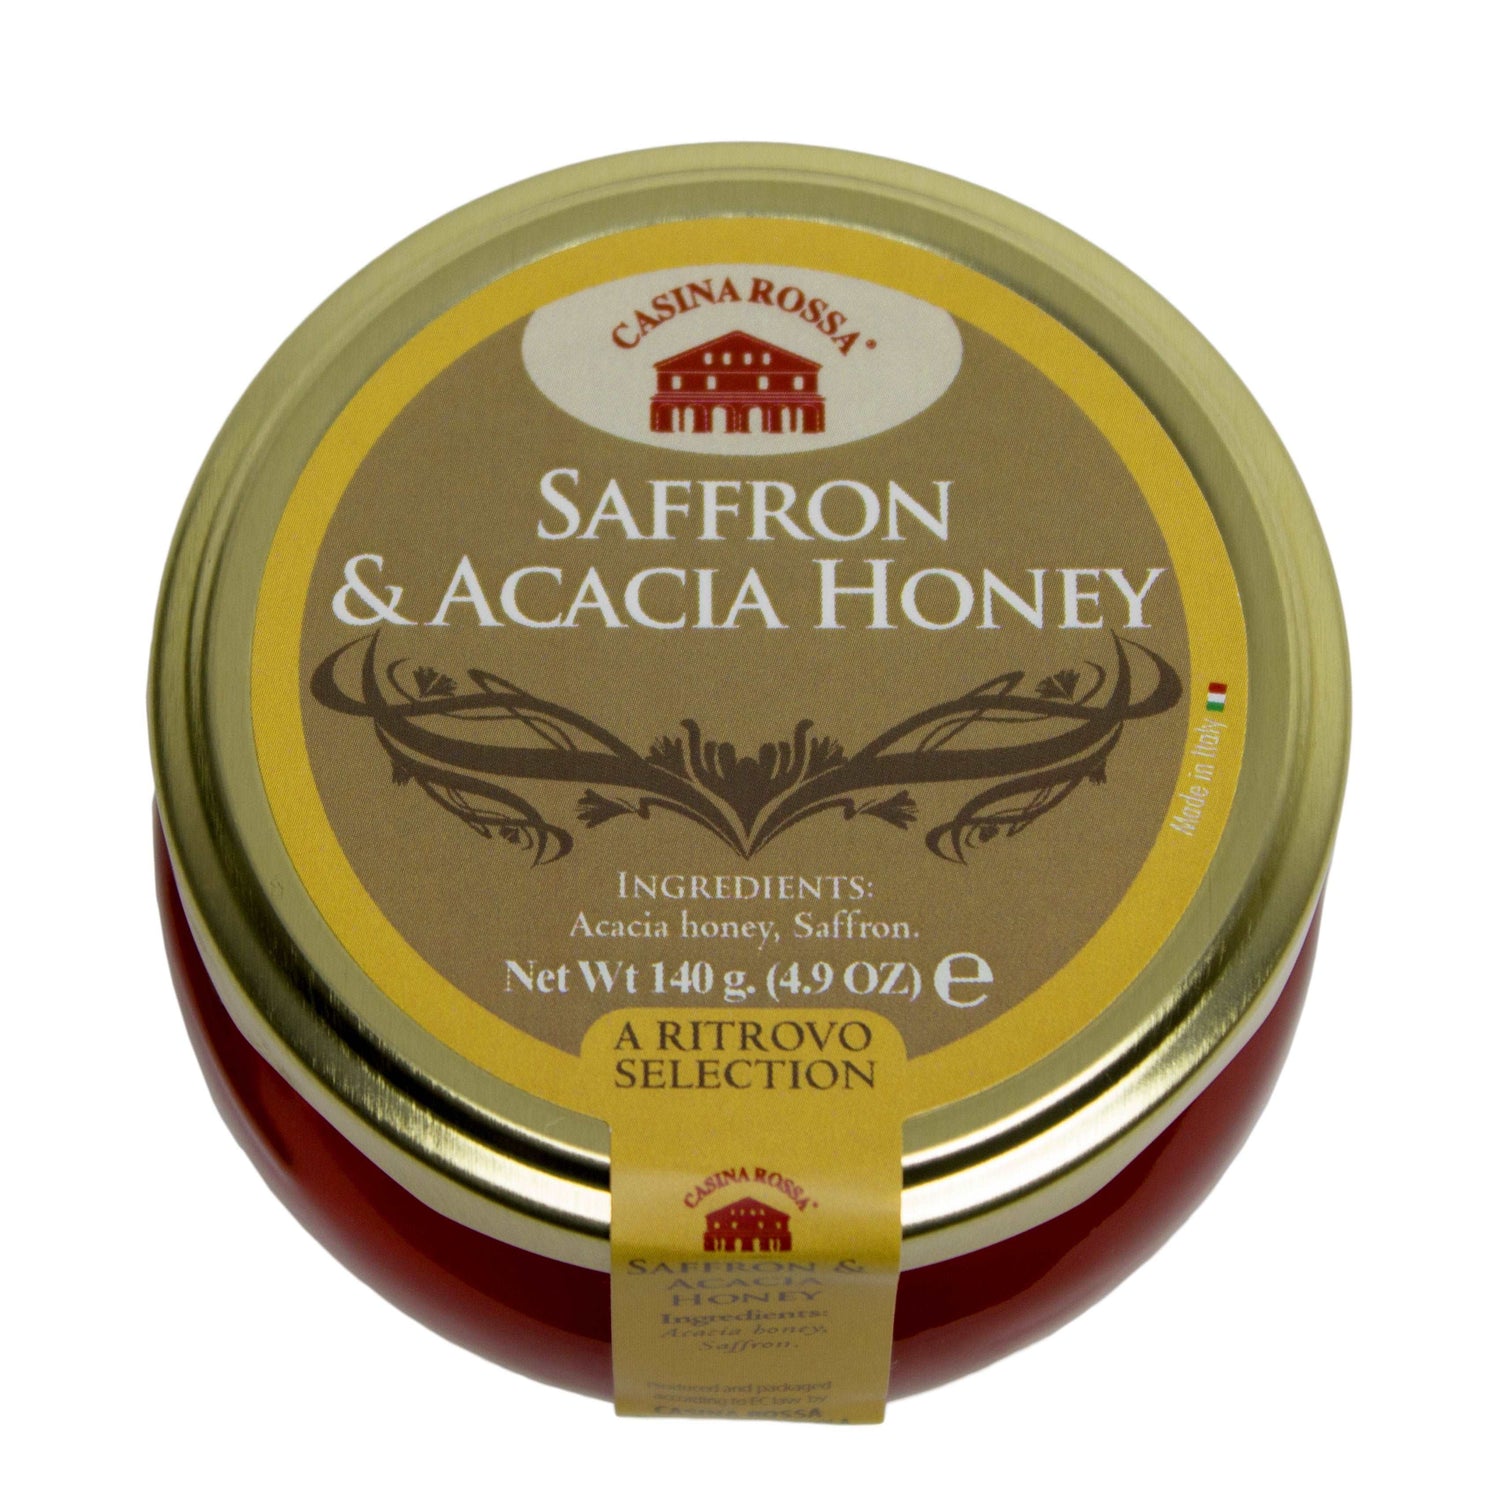 Casina Rossa Saffron & Acacia Honey